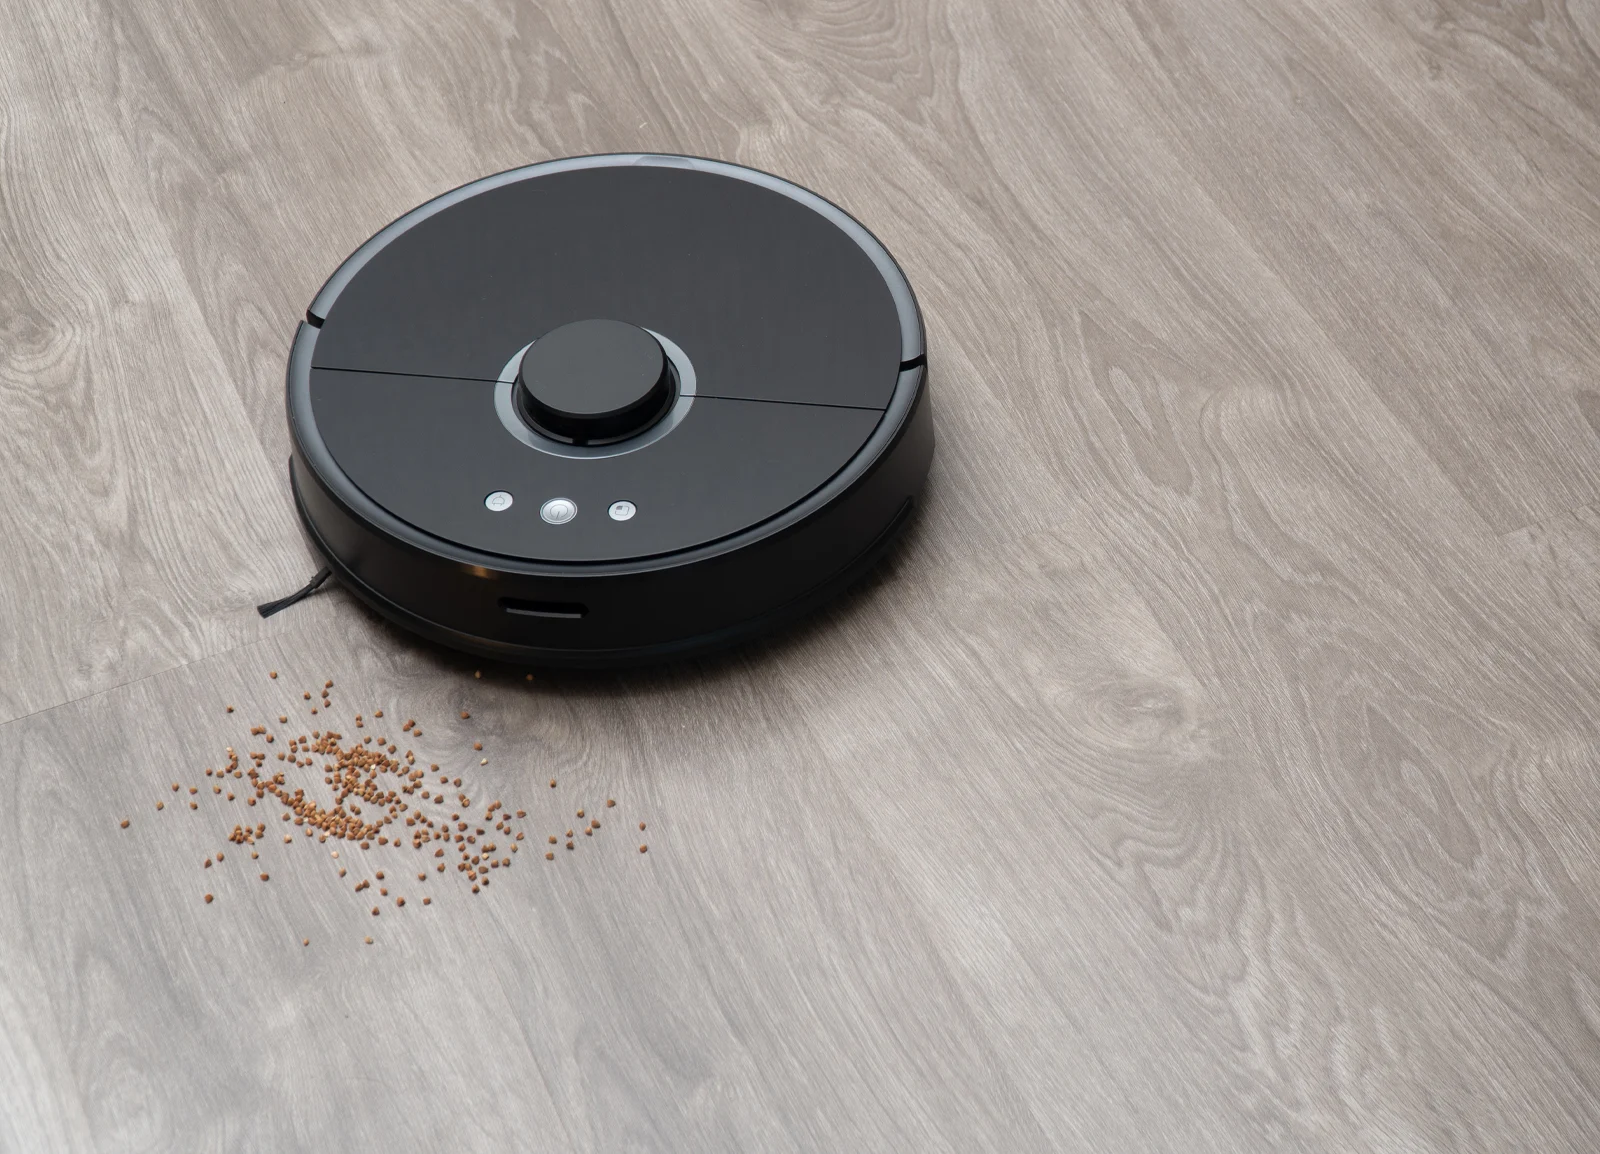 Smart Robotic Vacuum cleaning a kitchen floor